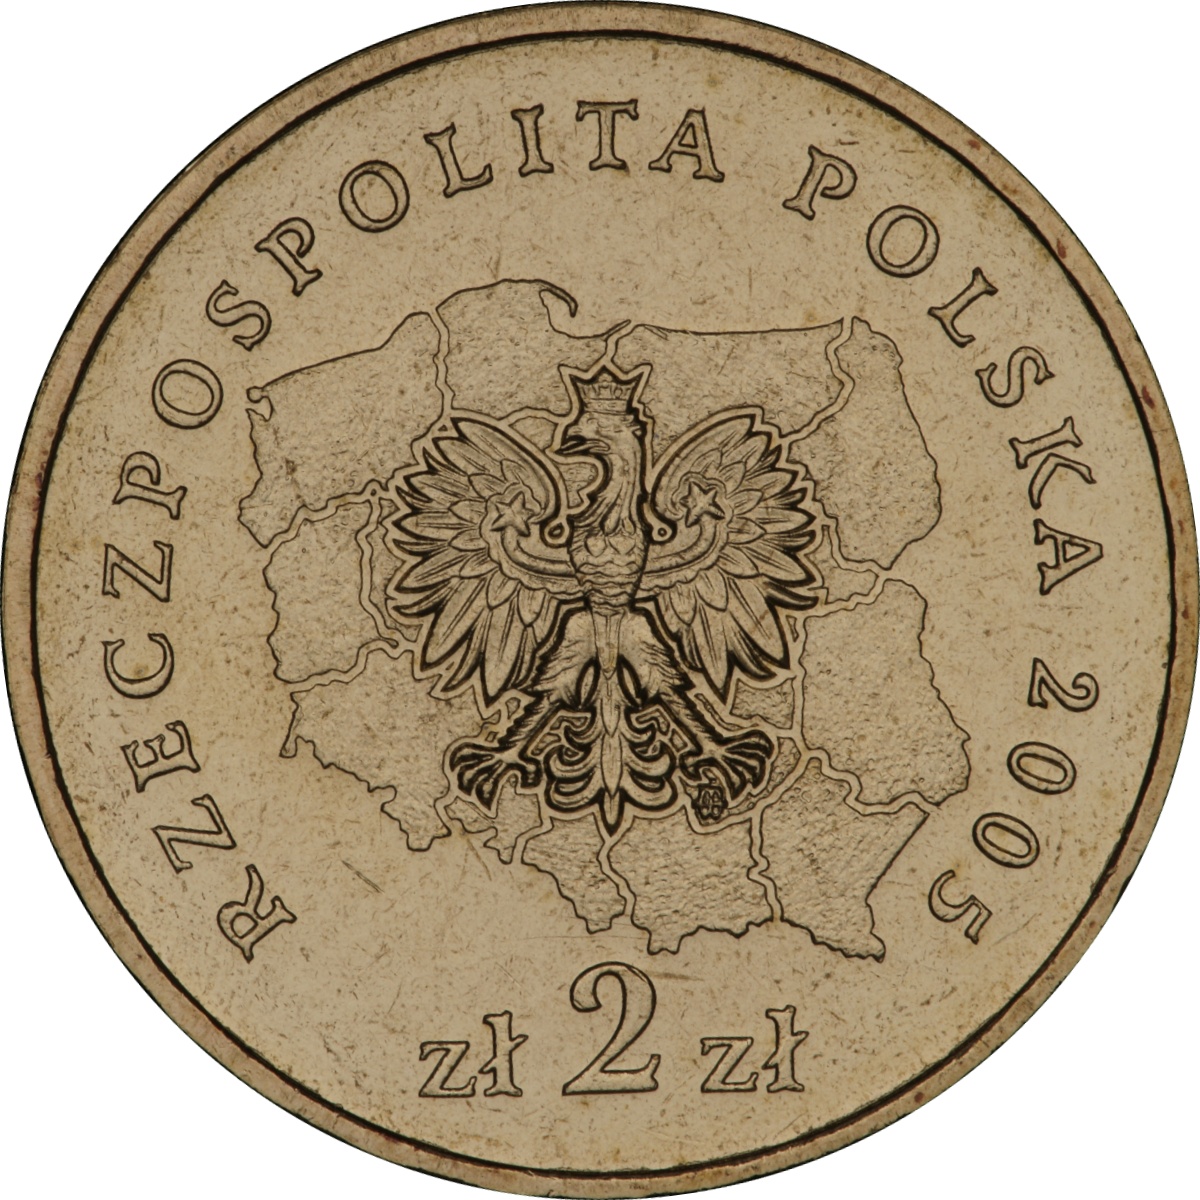 2zl-okolicznosciowe-wojewodztwo-zachodniopomorskie-awers-monety